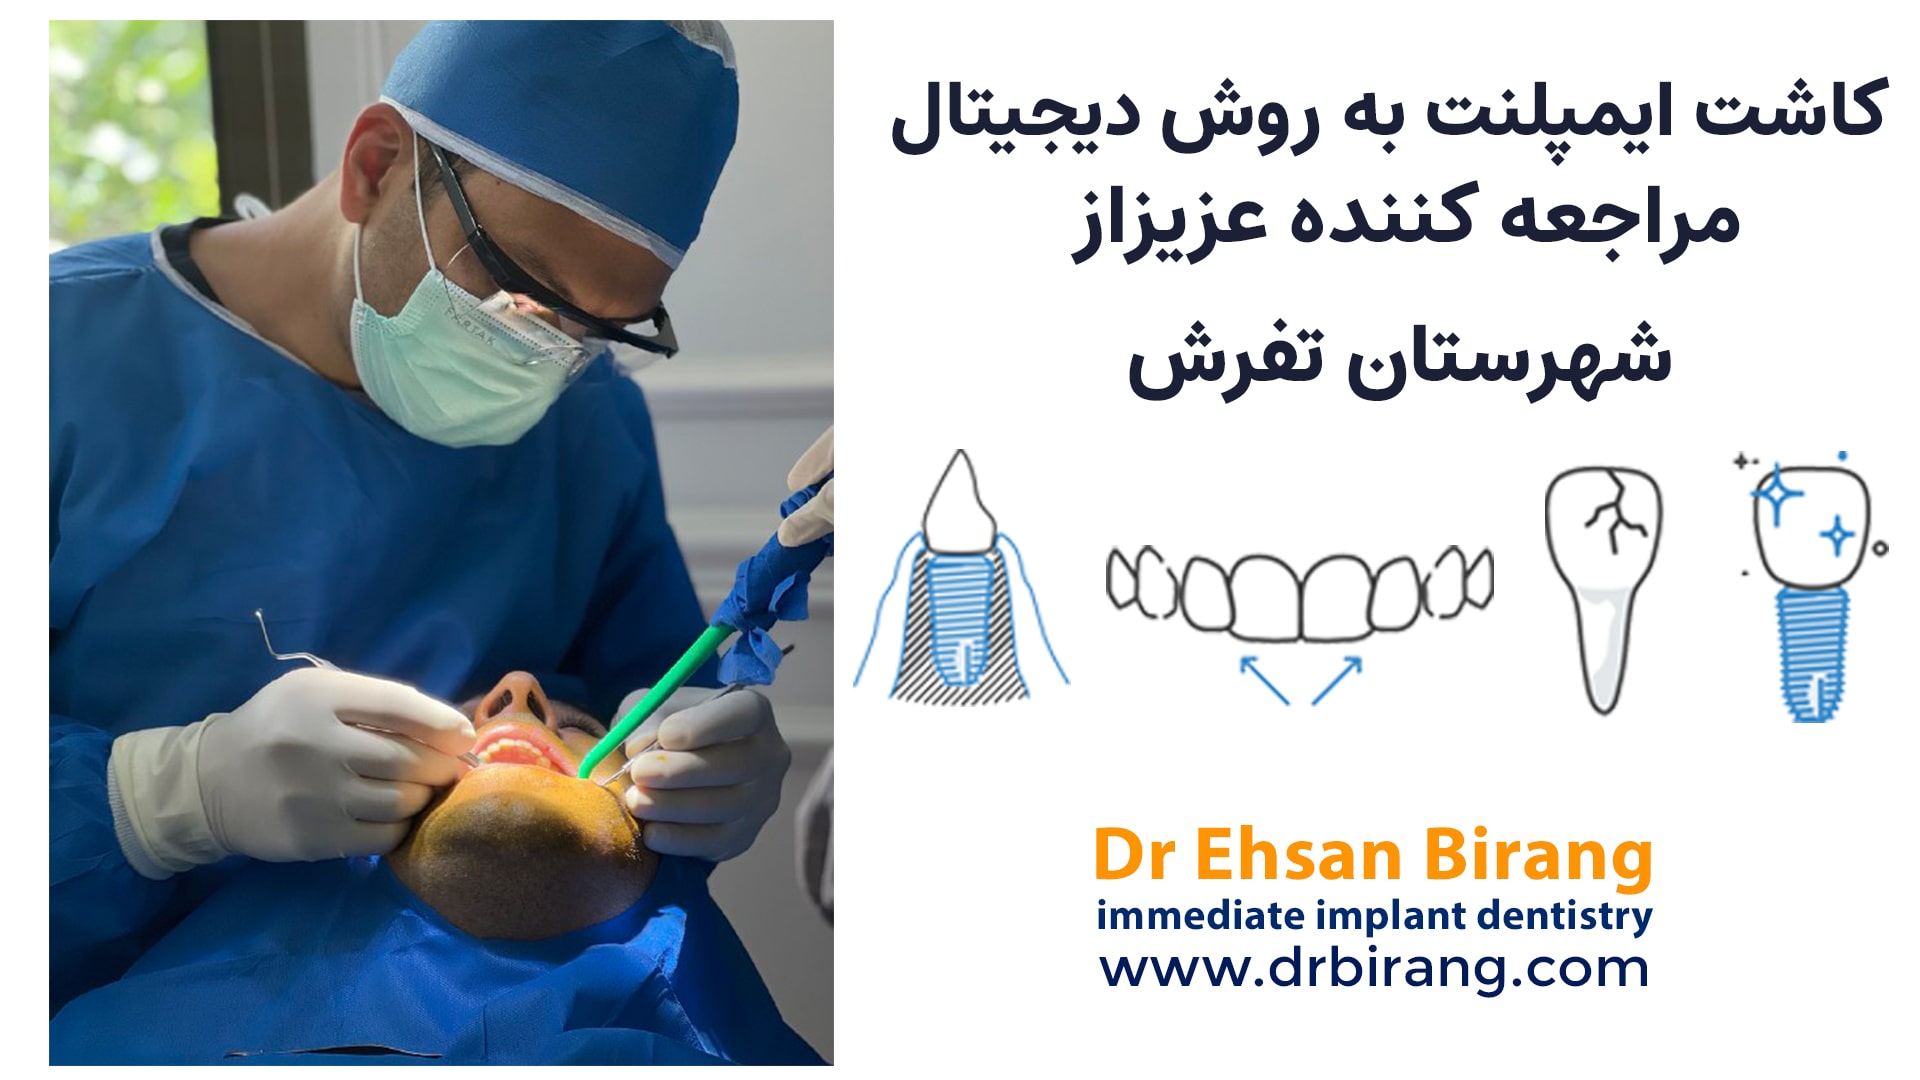 درمان خارج‌سازی دندان، ایمپلنت‌گذاری و پیوند استخوان و پیوند لثه در یک جلسه بیمار از تفرش | دکتر احسان بیرنگ فوق تخصص ایمپلنت دیجیتال در شمال تهران